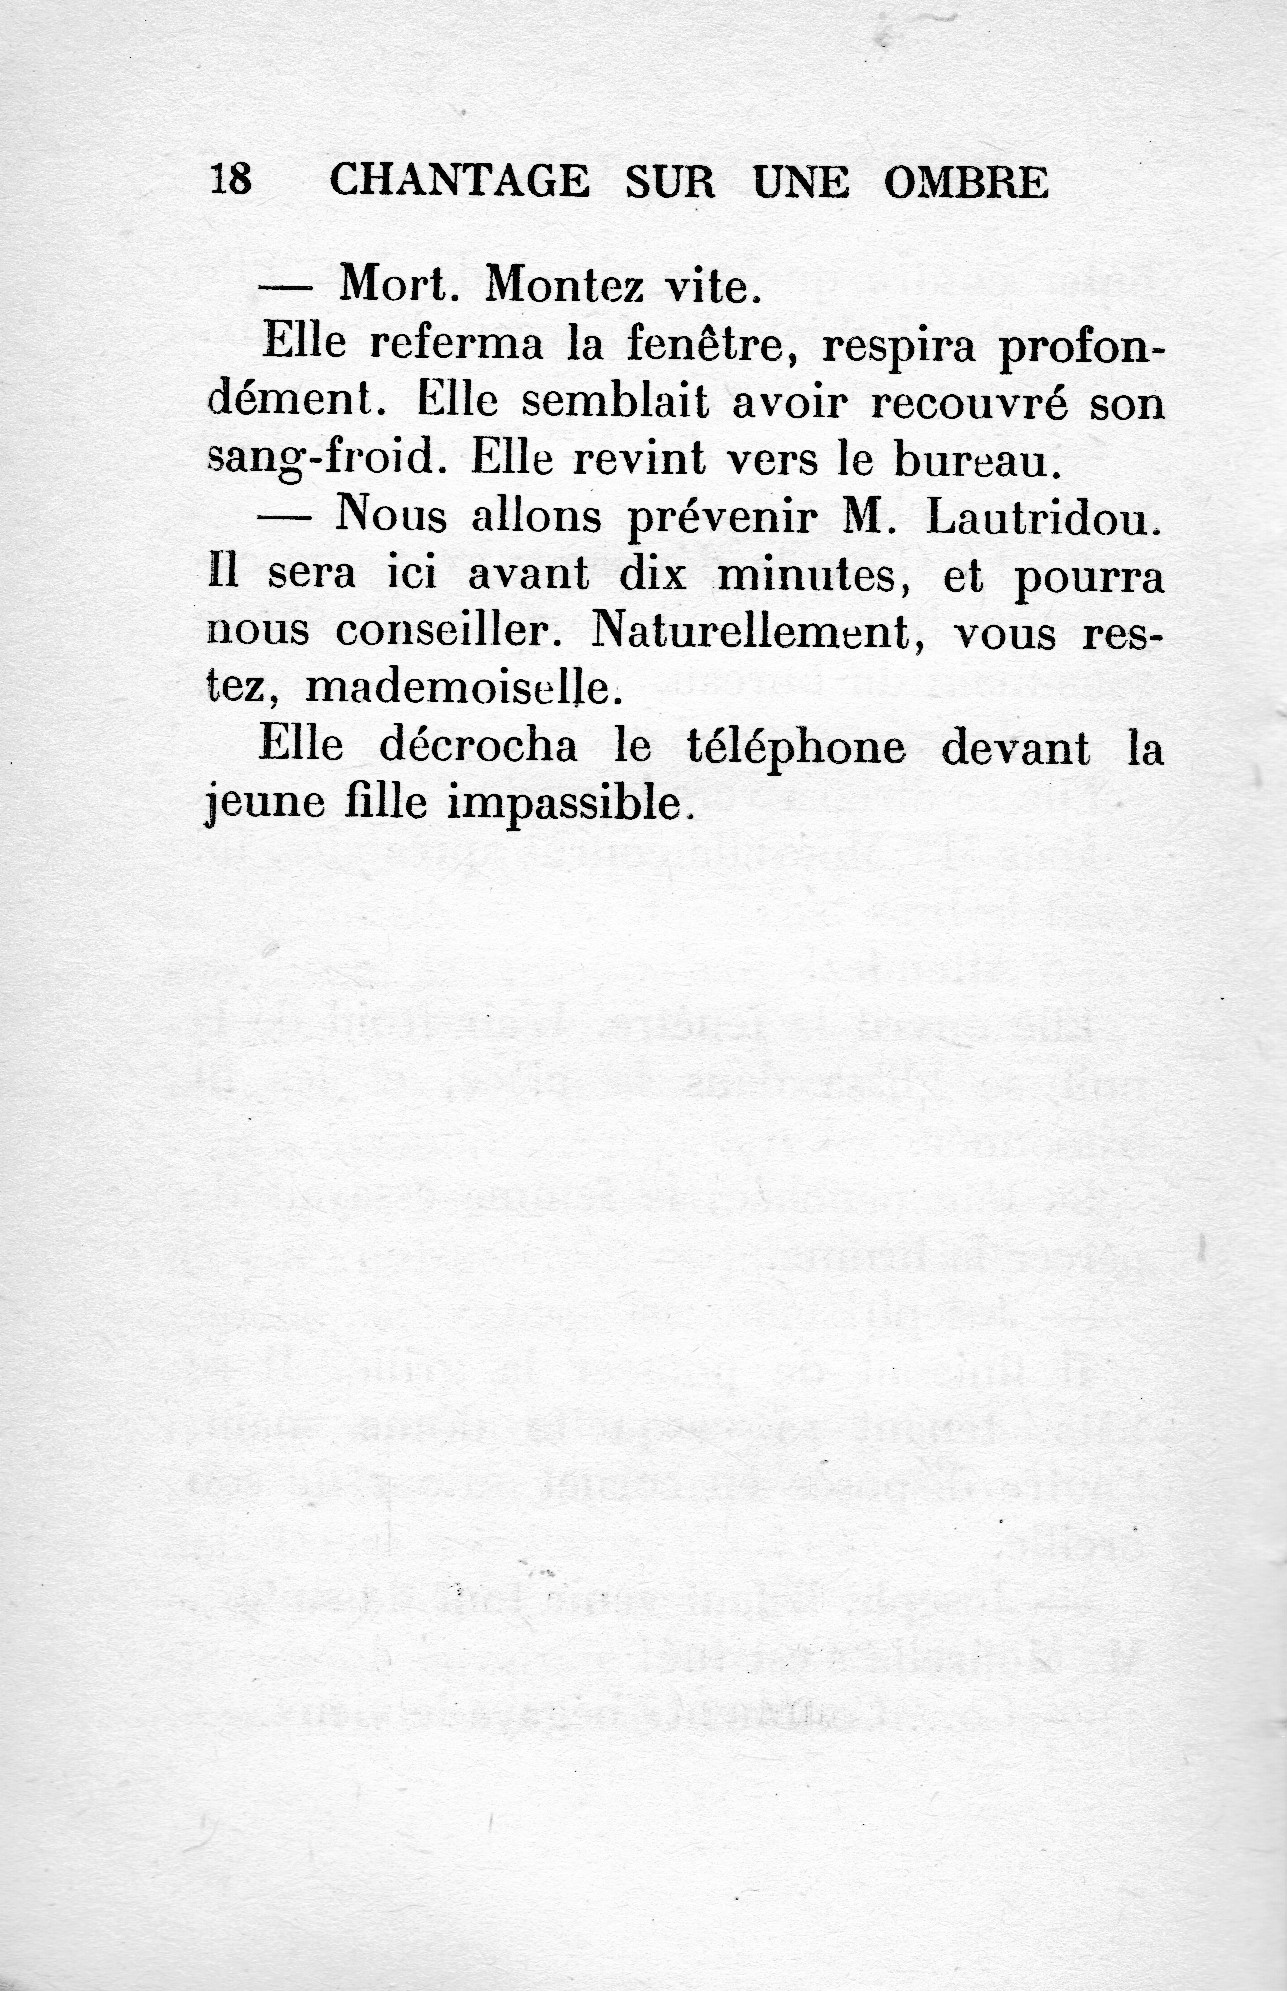 Chantage-sur-une-ombre, Le Masque (1963) - 1er chapitre offert - 12